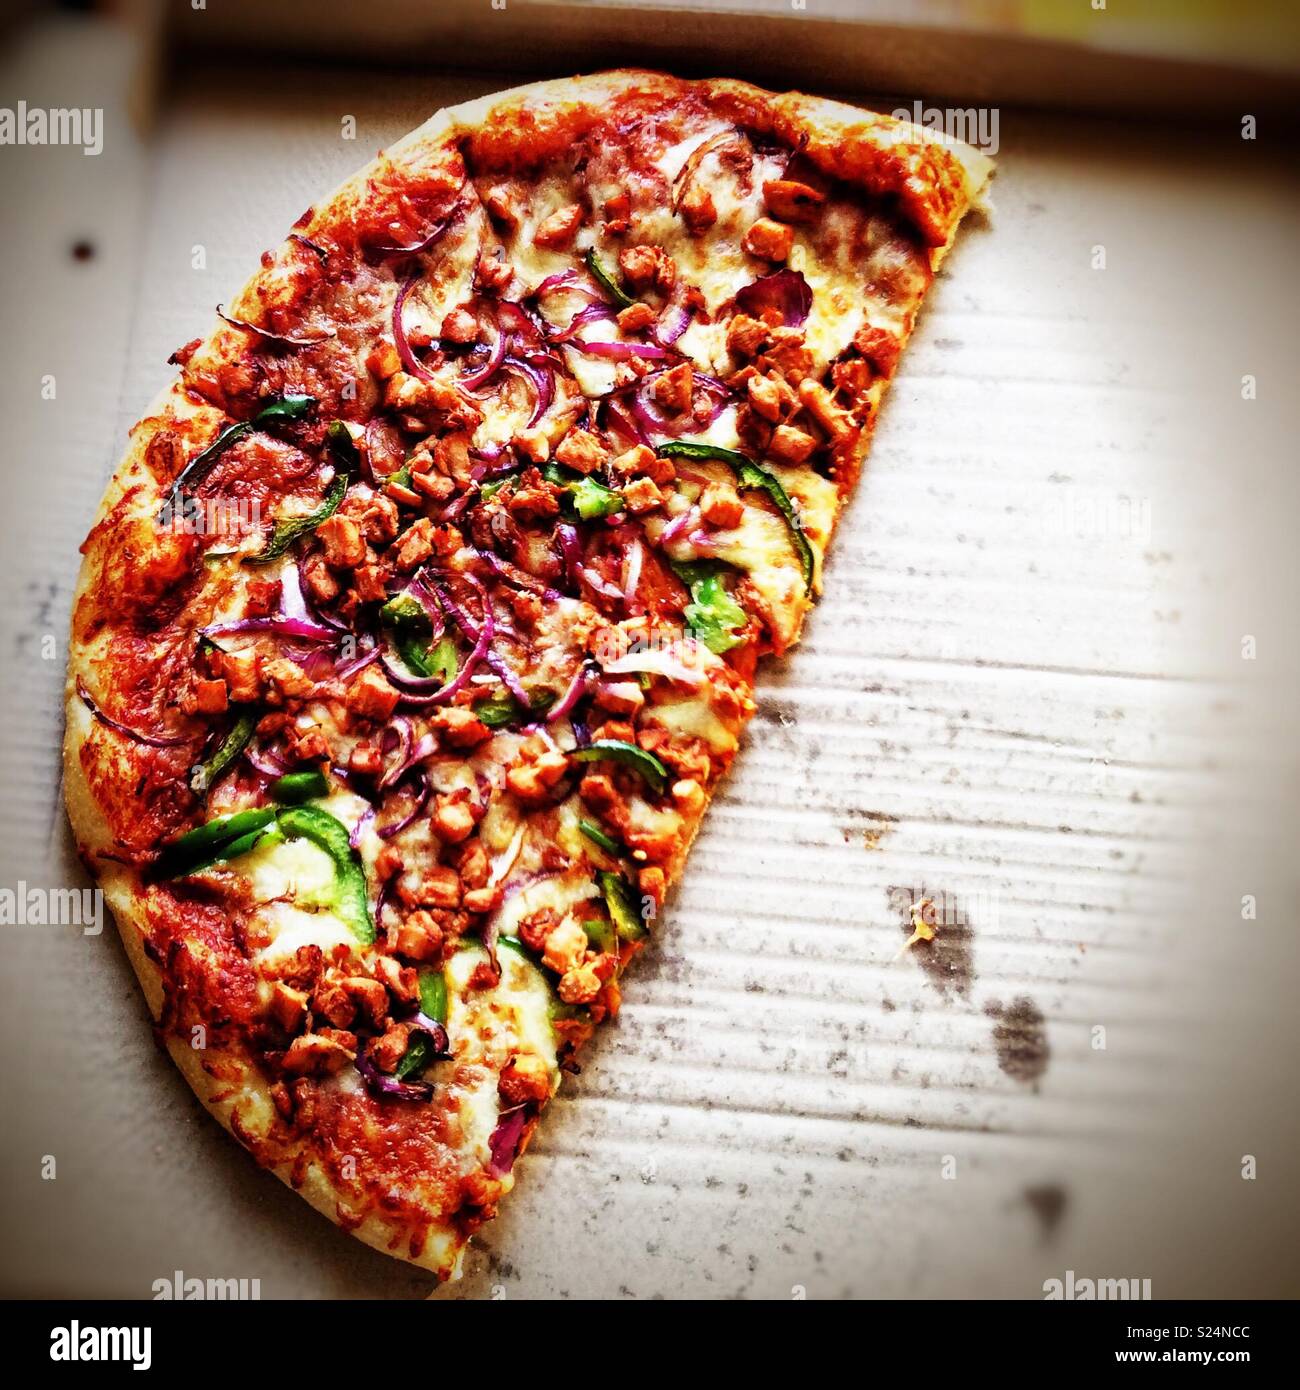 Half a pizza in a pizza box Stock Photo 311120556 Alamy